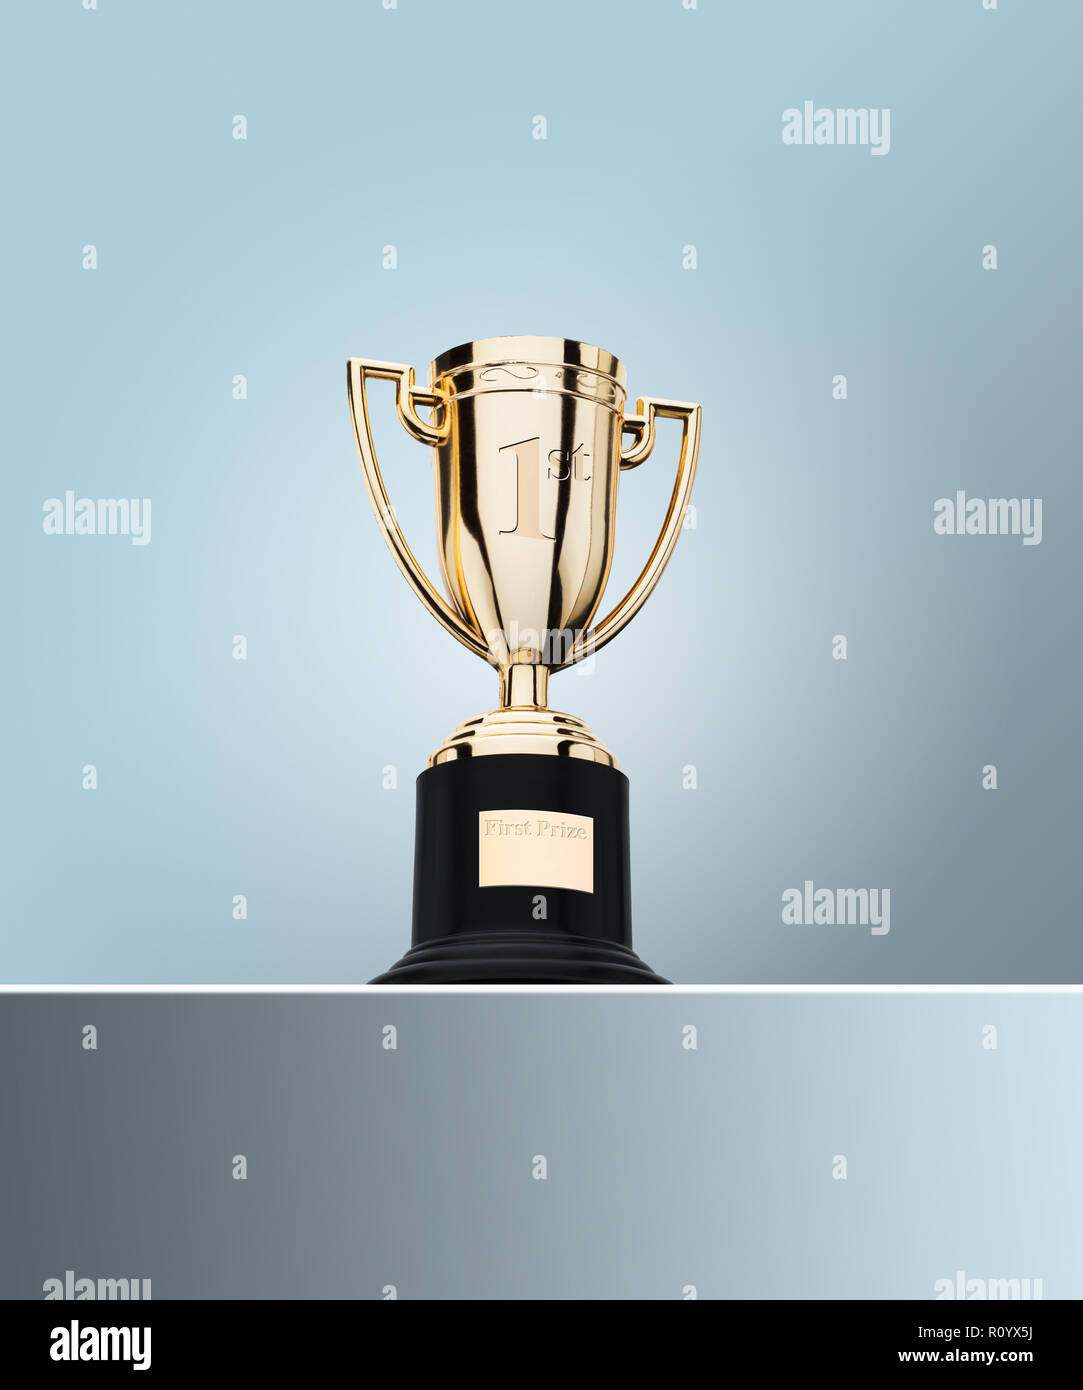 Der erste Preis Gold Cup Trophäe am Tisch gegen grauer Hintergrund Stockfoto